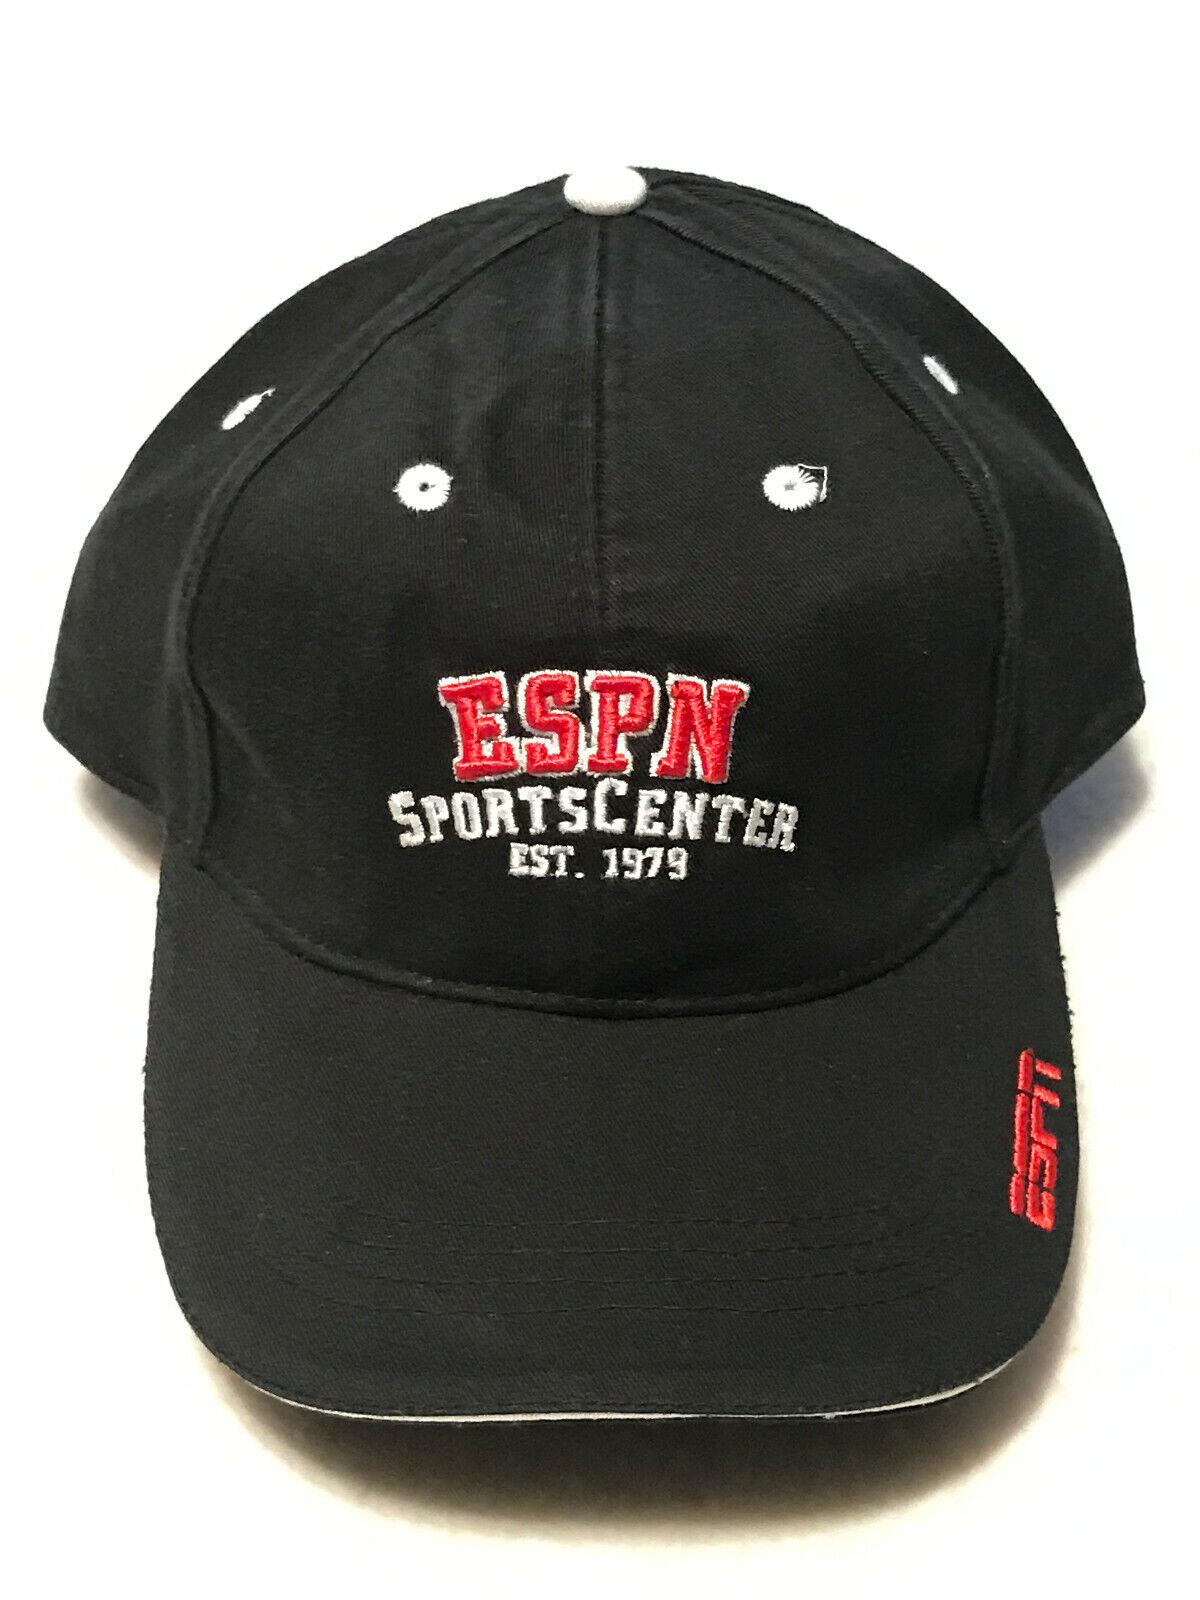 ESPN Sportscenter Est. 1979 Embroidered Baseball Golf Hat Black Adjustable NEW